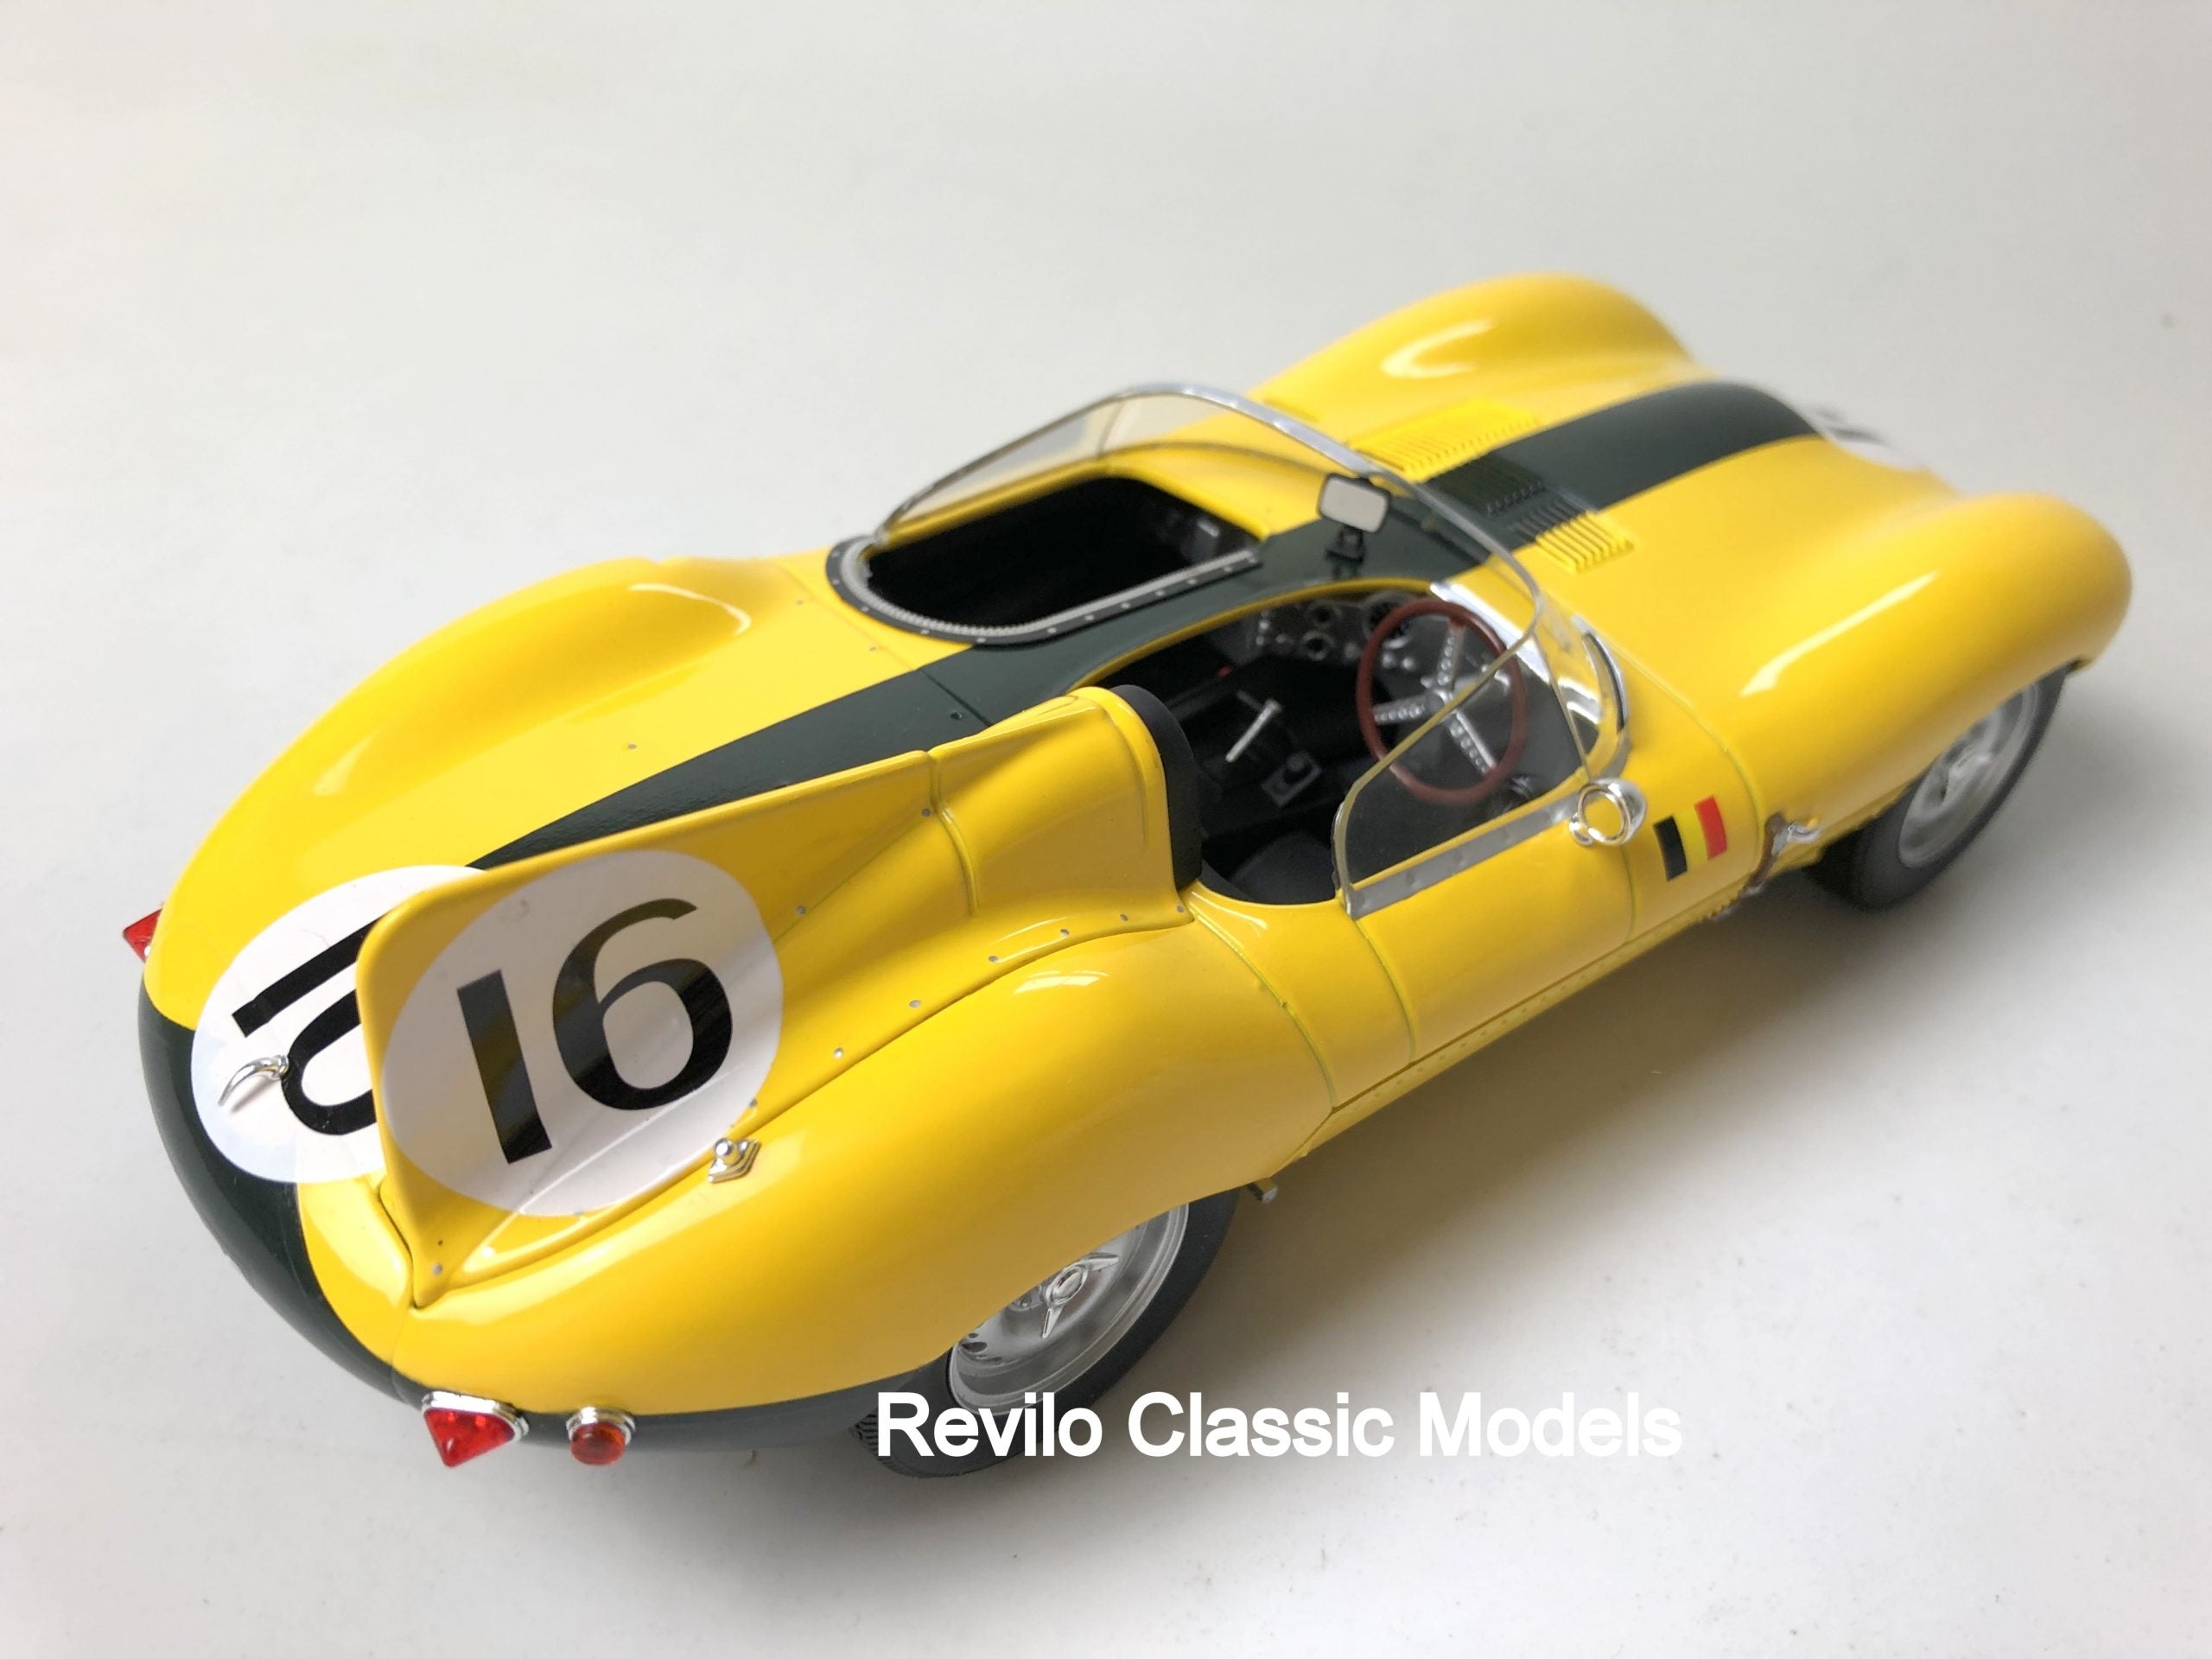 1957 Jaguar D Tipo 1:18 Le Mans 4to Lugar